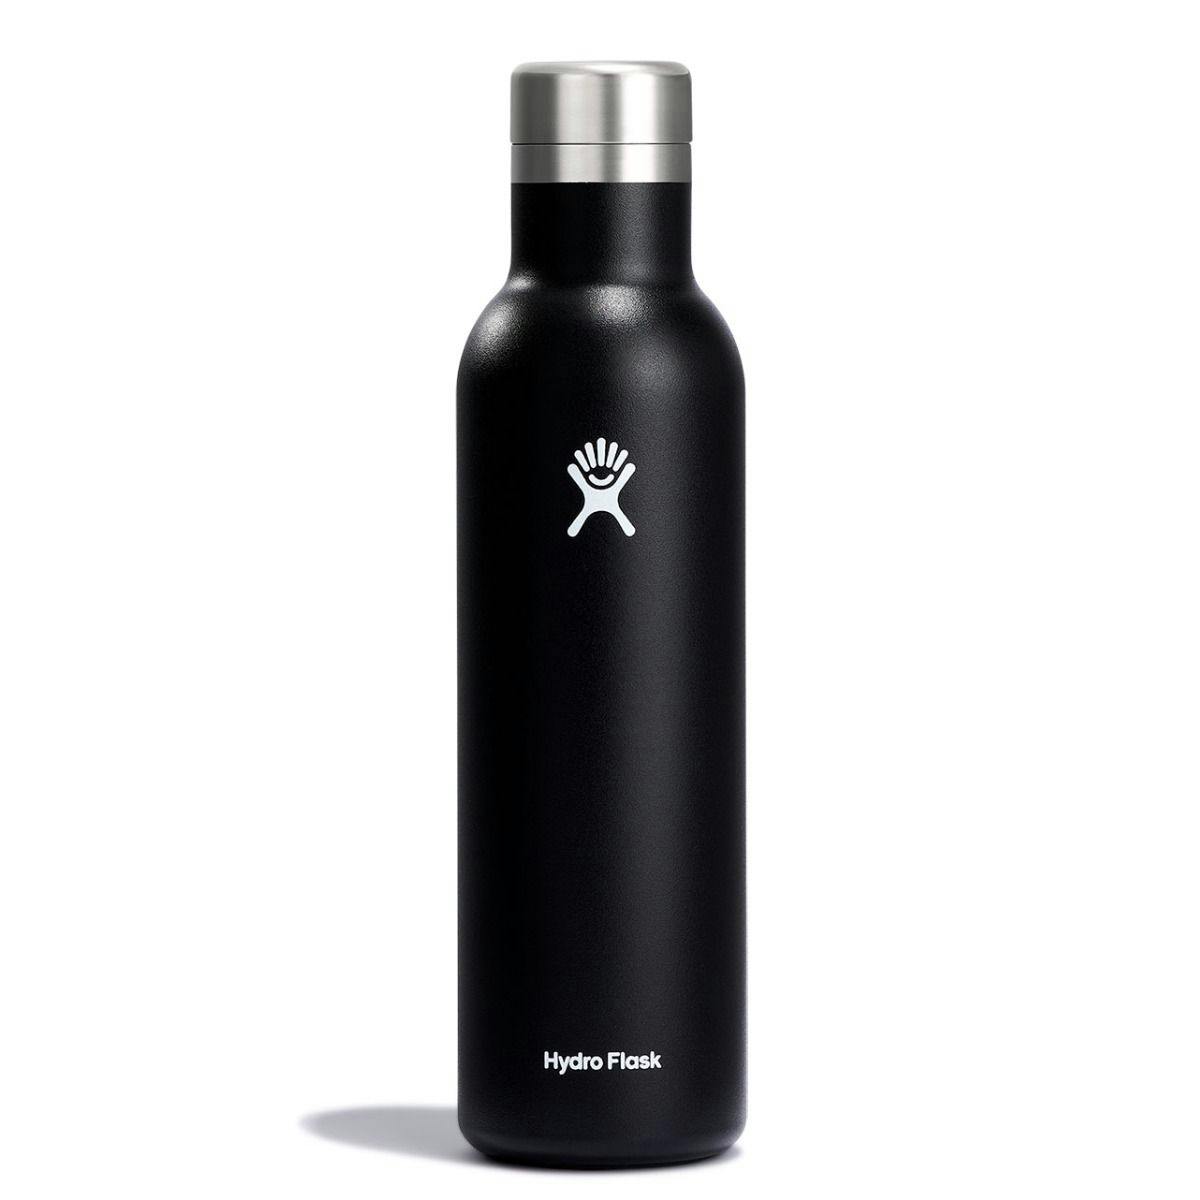 Hydro Flask 25 oz Wine Bottle · Black